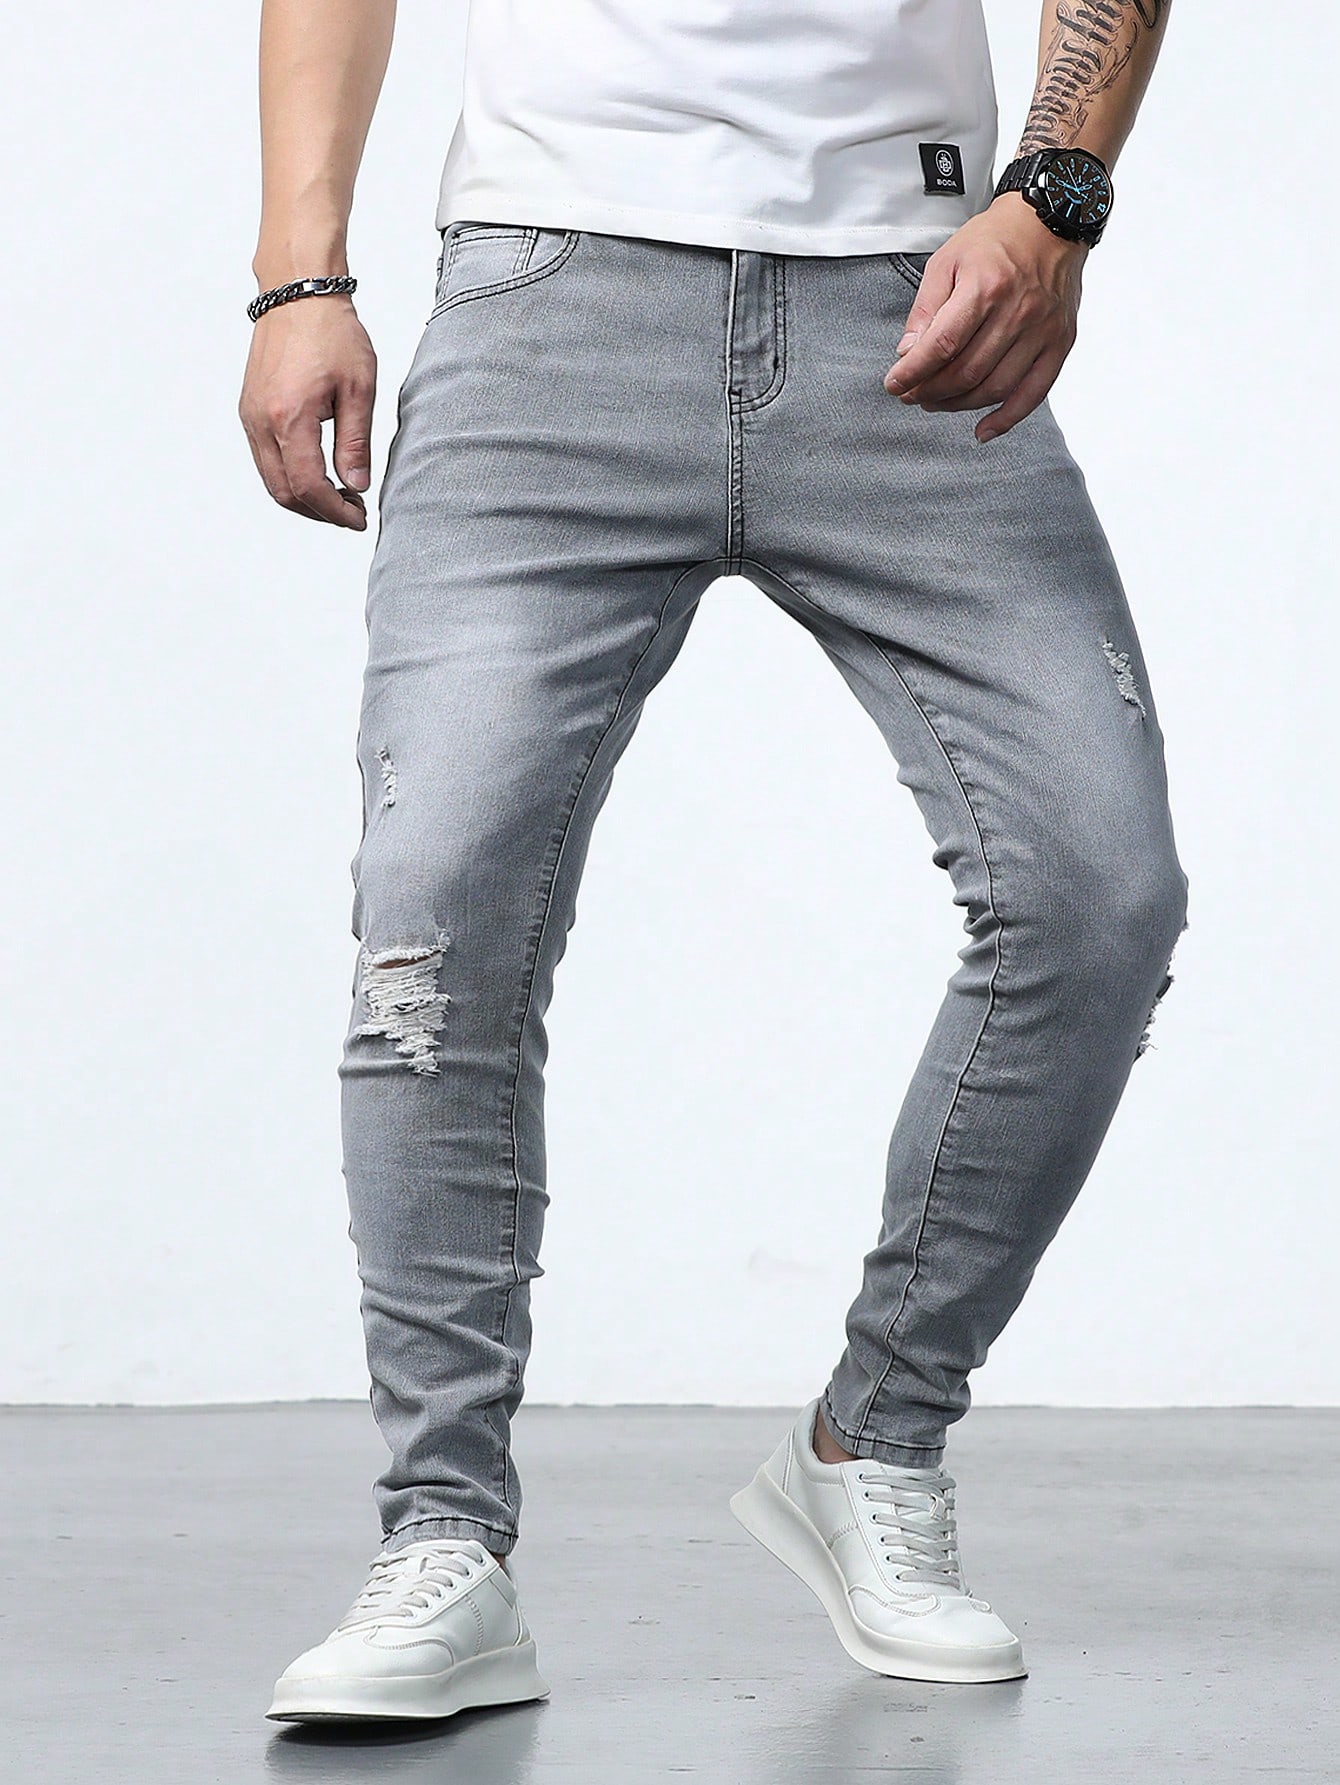 Мужские джинсы скинни с потертостями Manfinity Homme, серый джинсы с потертостями 44 размер